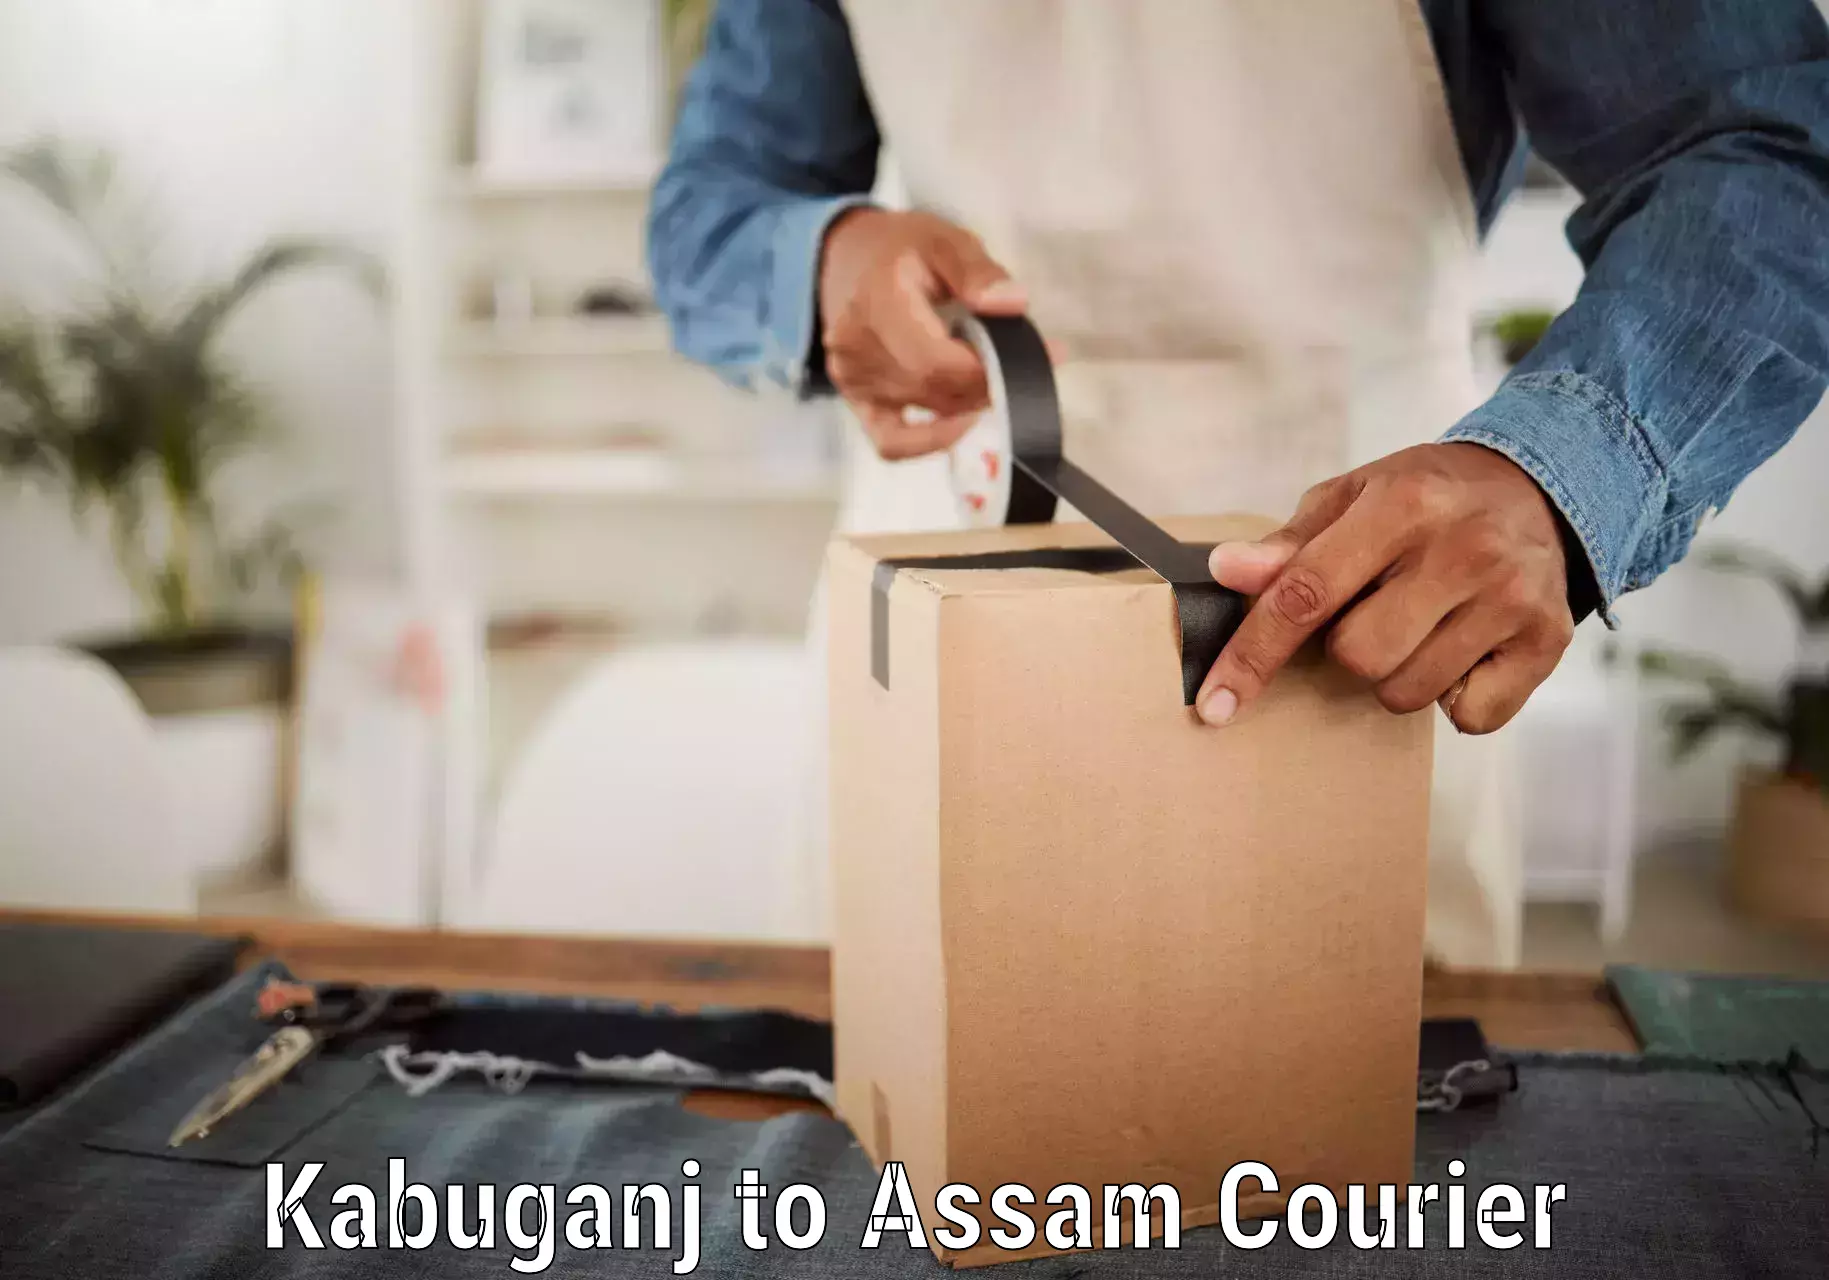 Emergency parcel delivery Kabuganj to Balighat